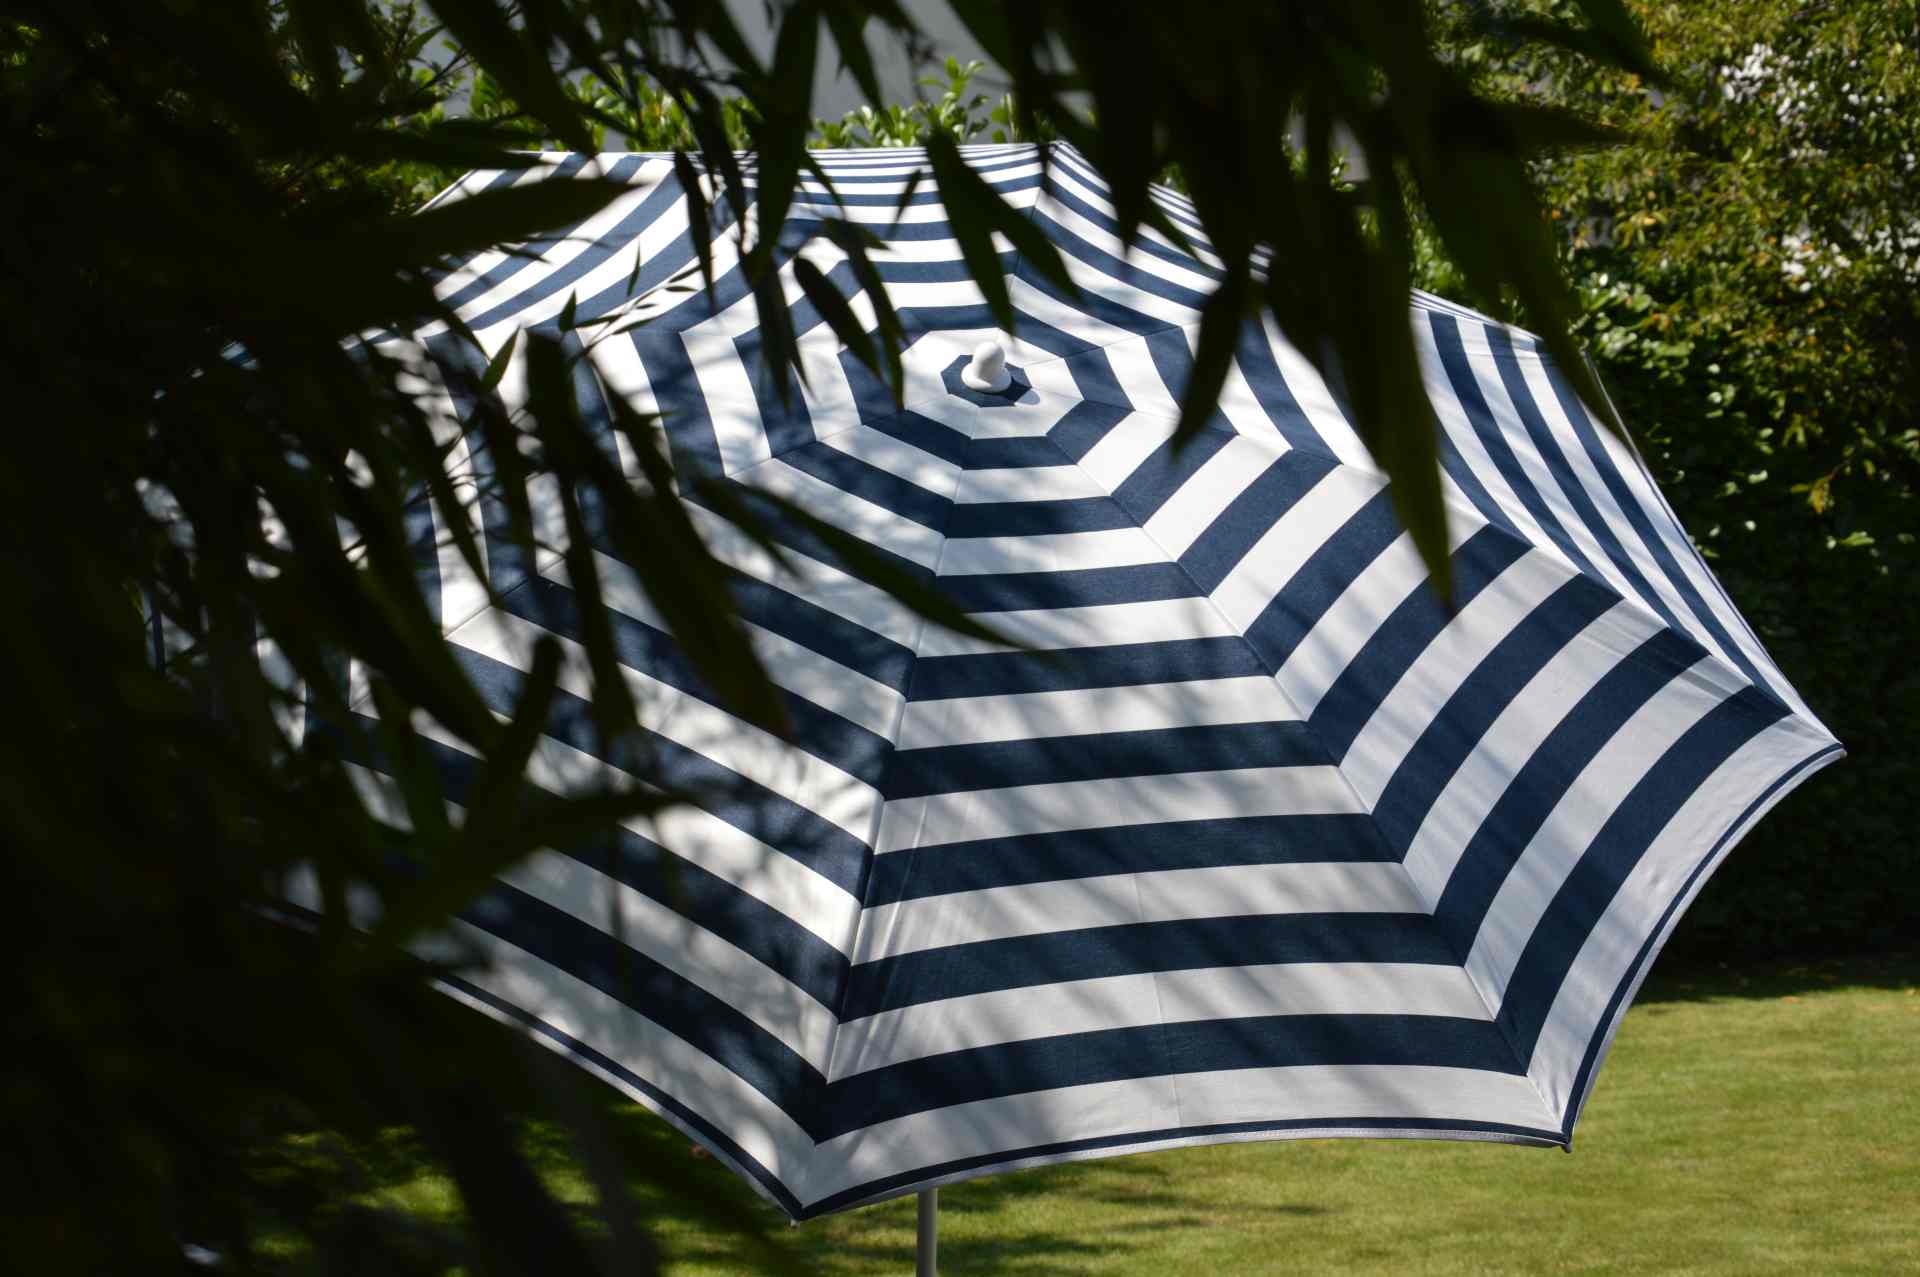 Der Sonnenschirm Revenna überzeugt mit seinem modernen Design. Die Form des Schirms ist Rund. Designet wurde er von der Marke Jan Kurtz und hat die Farbe Weiß und Blau.